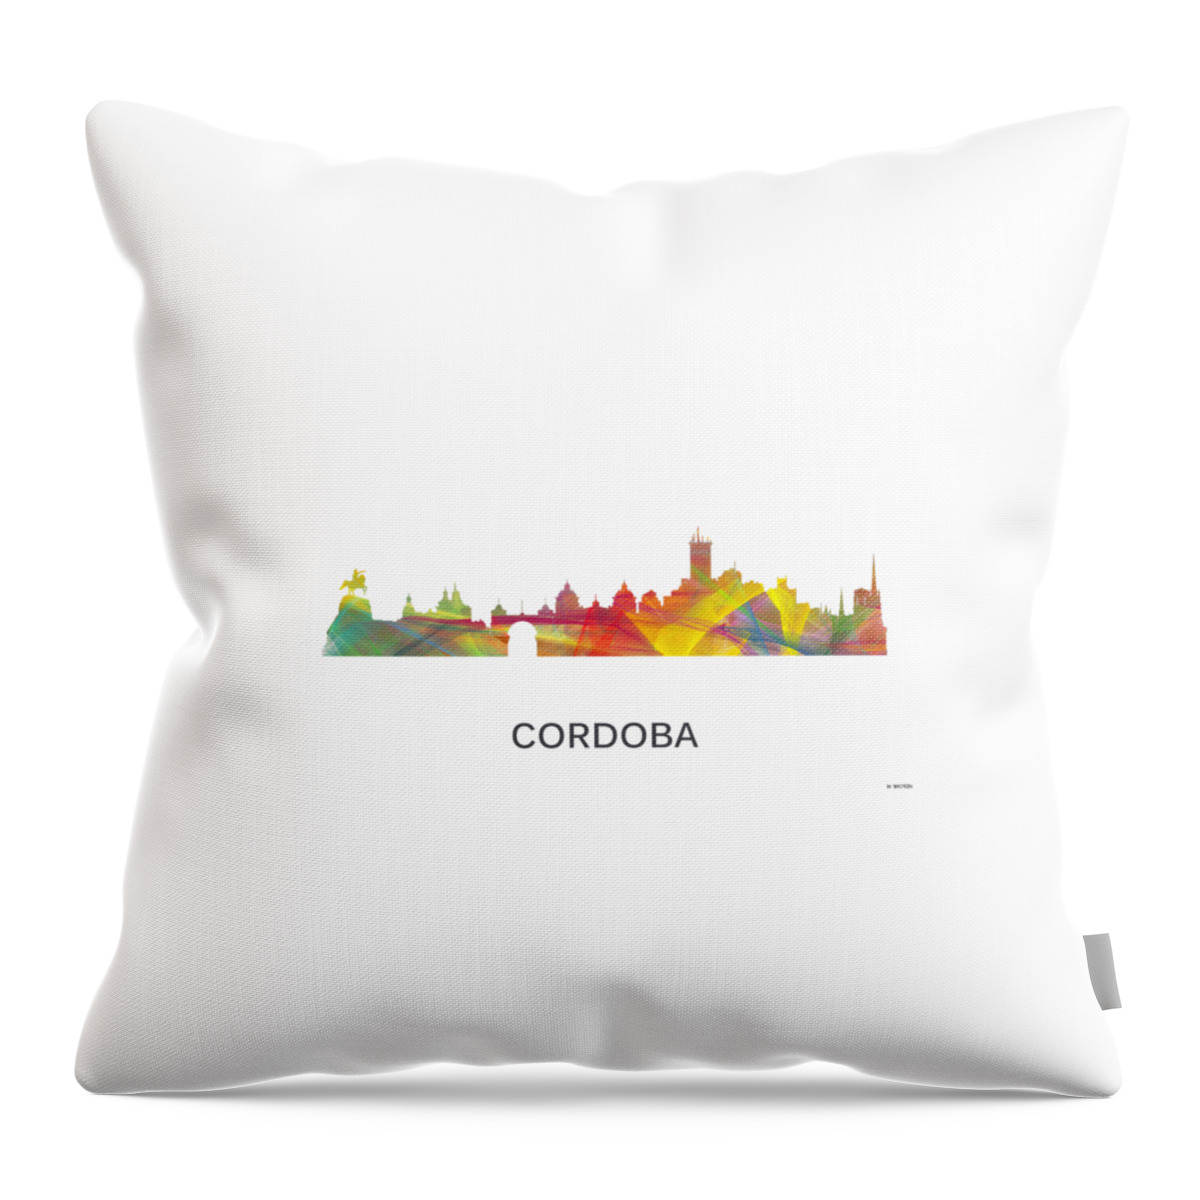 Cordoba Argentina Skyline Throw Pillow featuring the digital art Cordoba Argentina Skyline by Marlene Watson